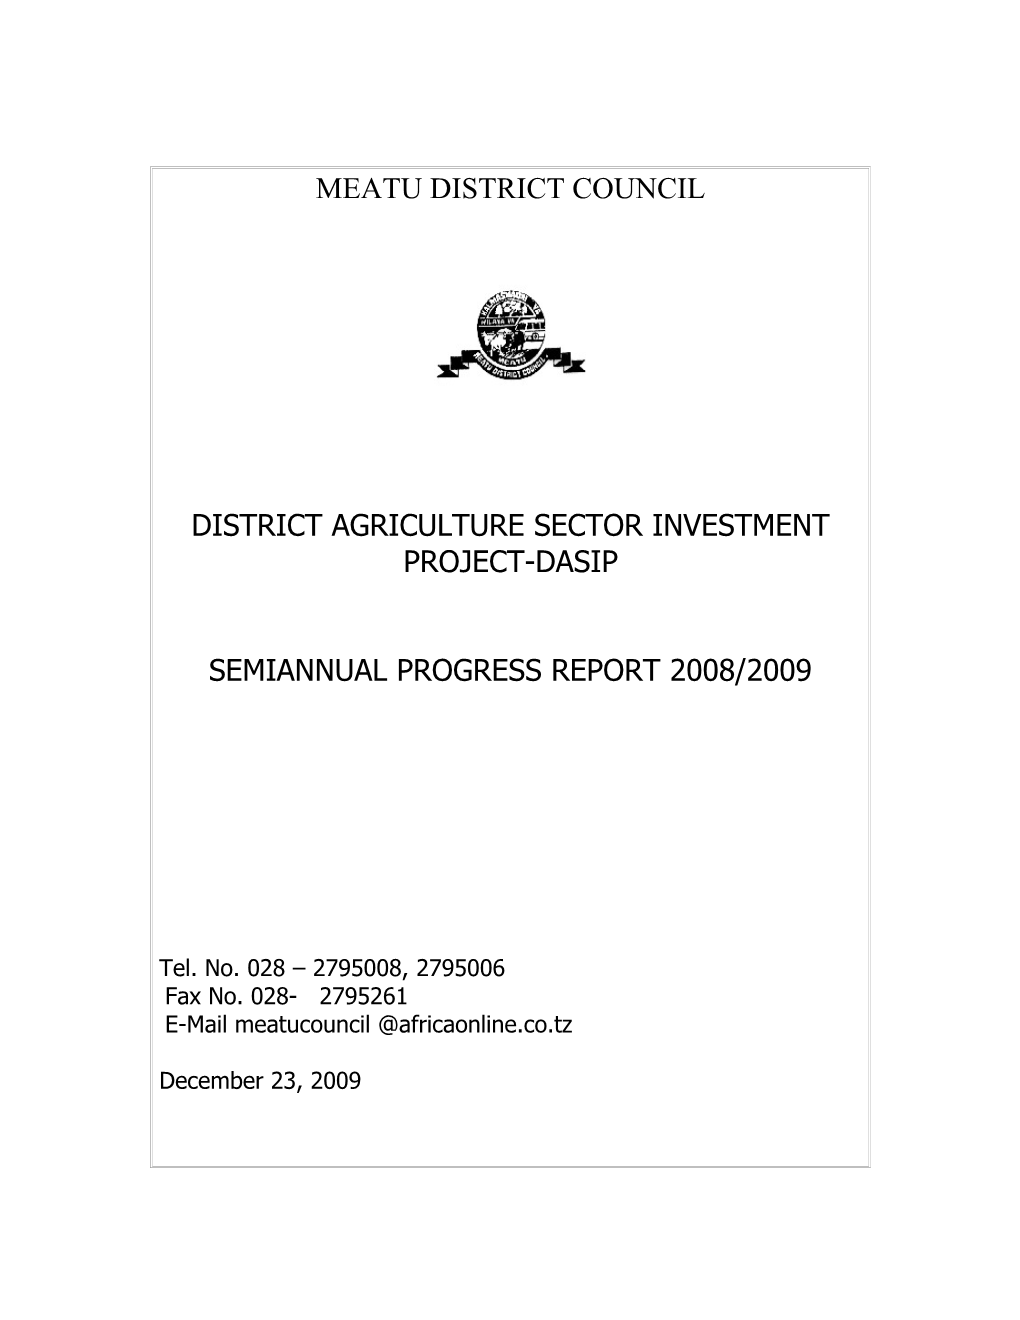 Meatu District Council